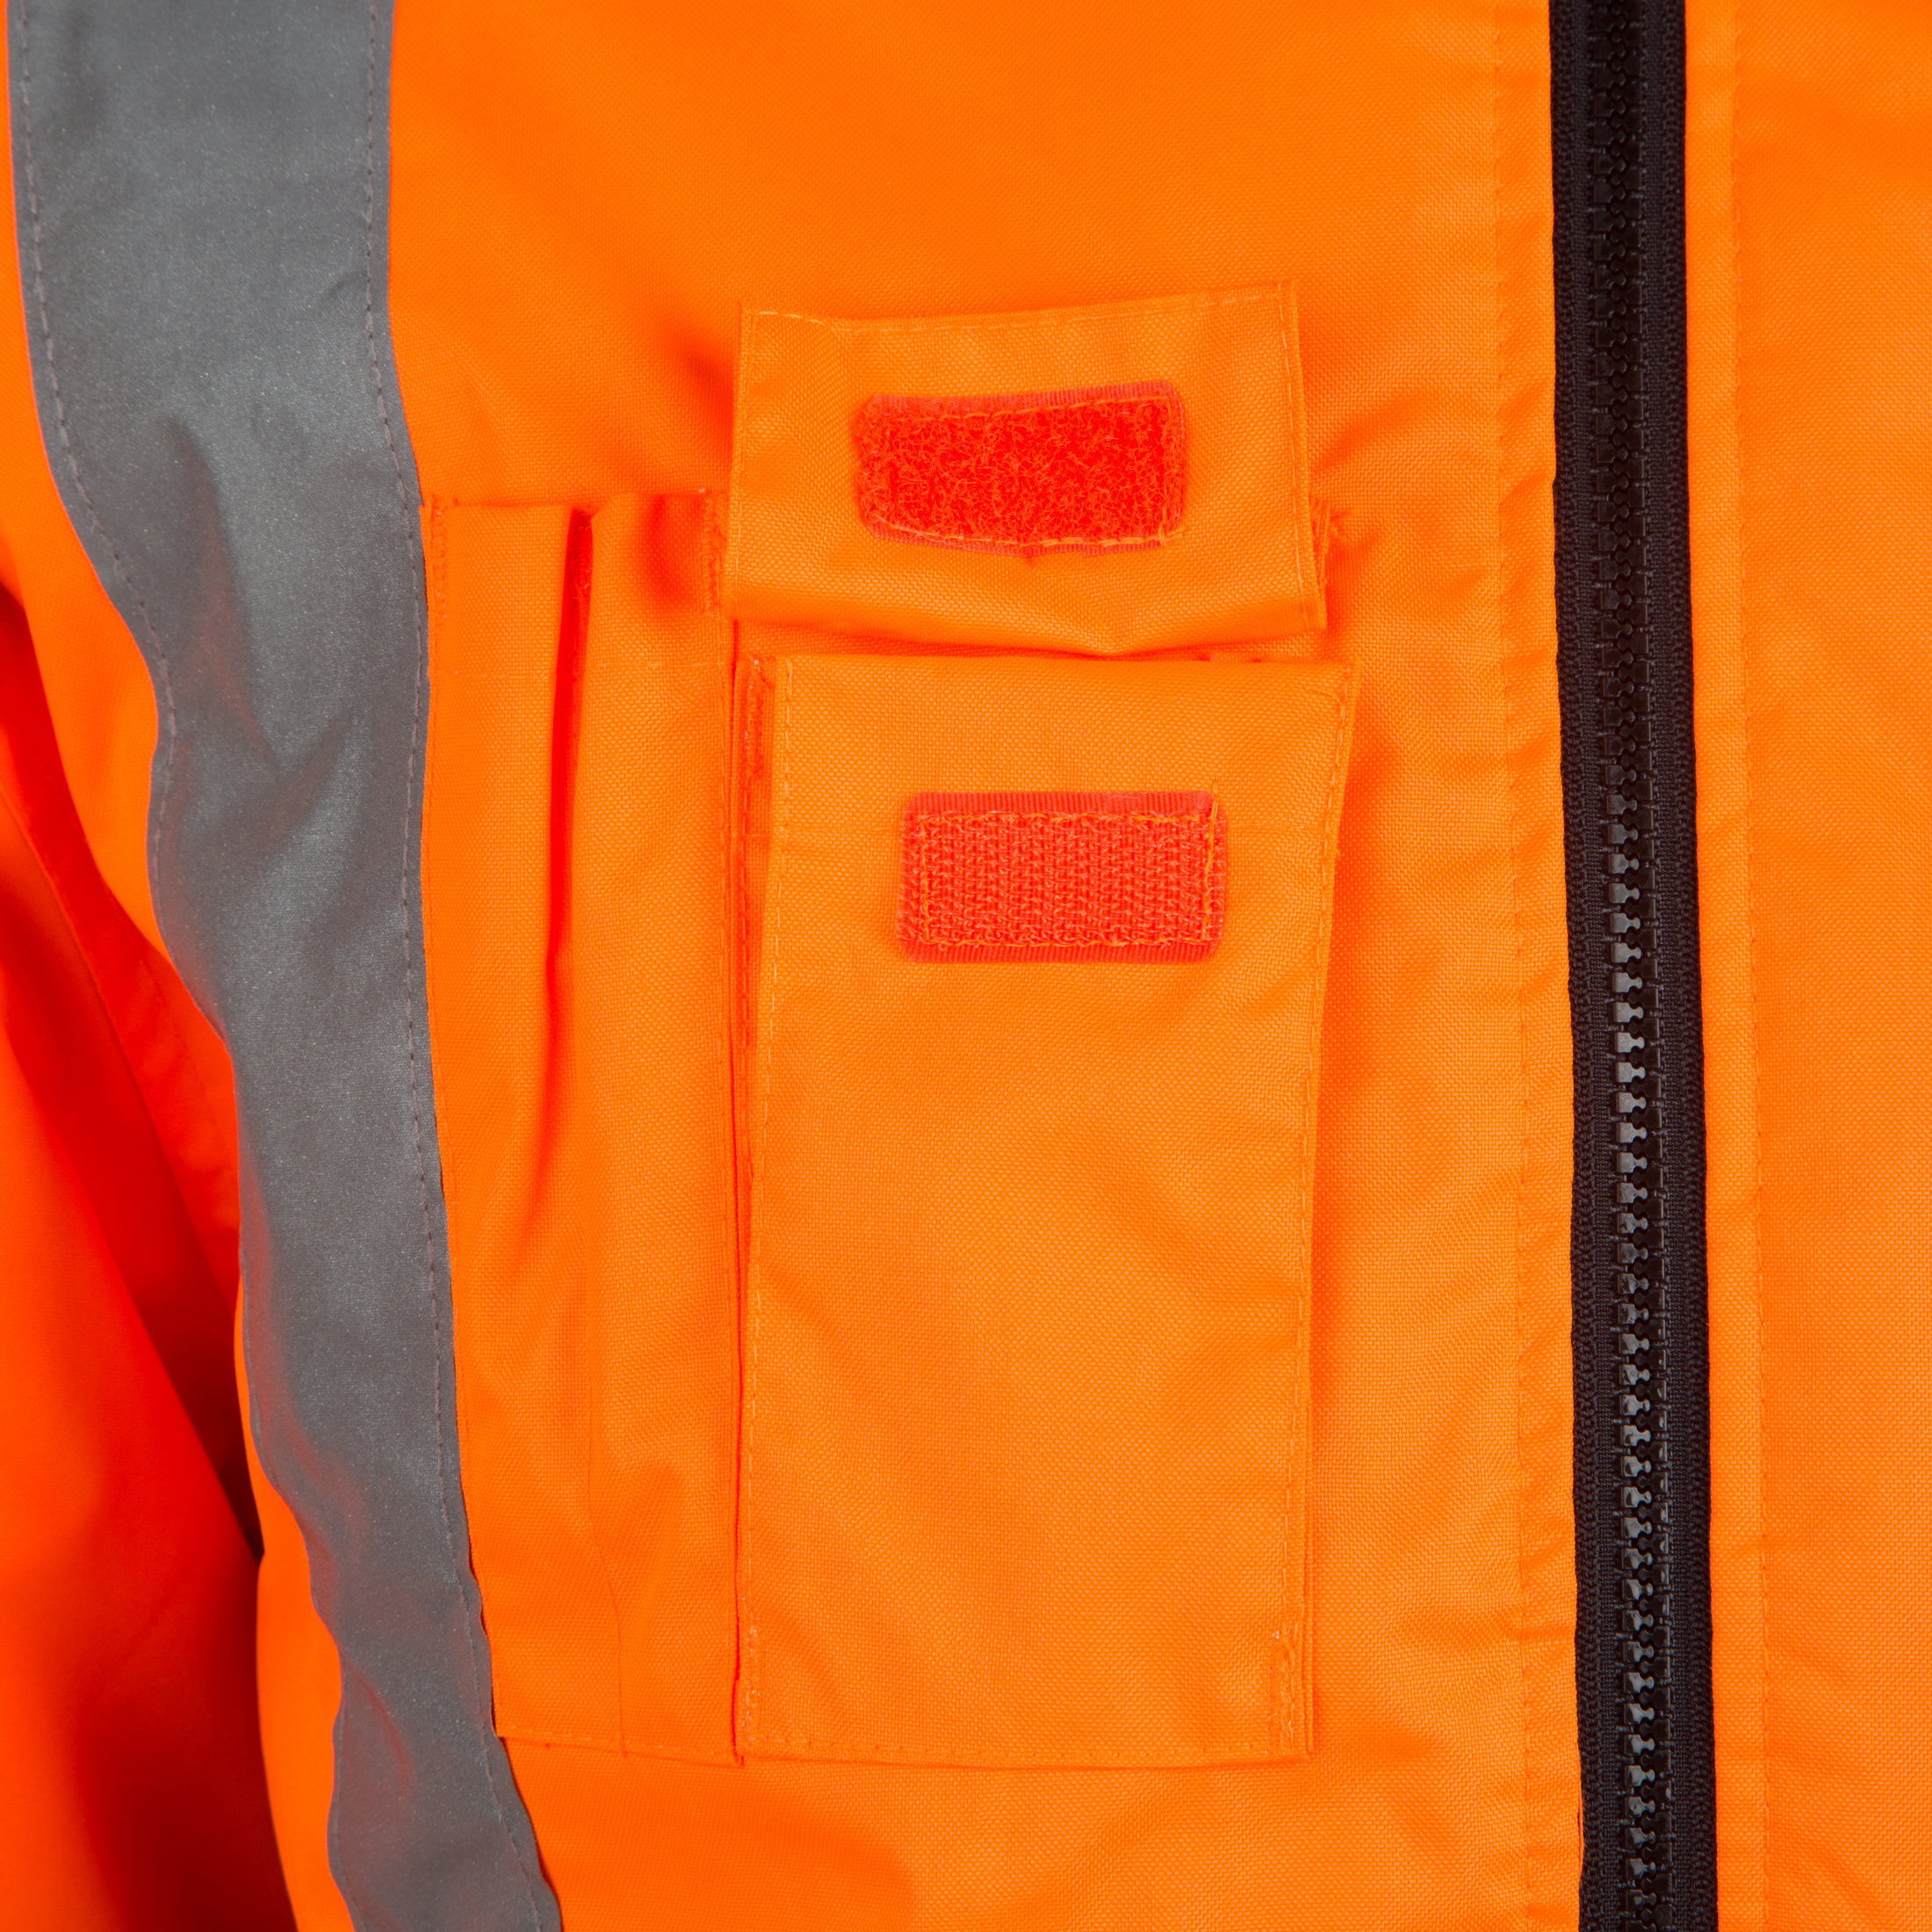 Workwear Warn- und Wetterschutzjacke, Style U-W 19, Farbe:leuchtorange-marine